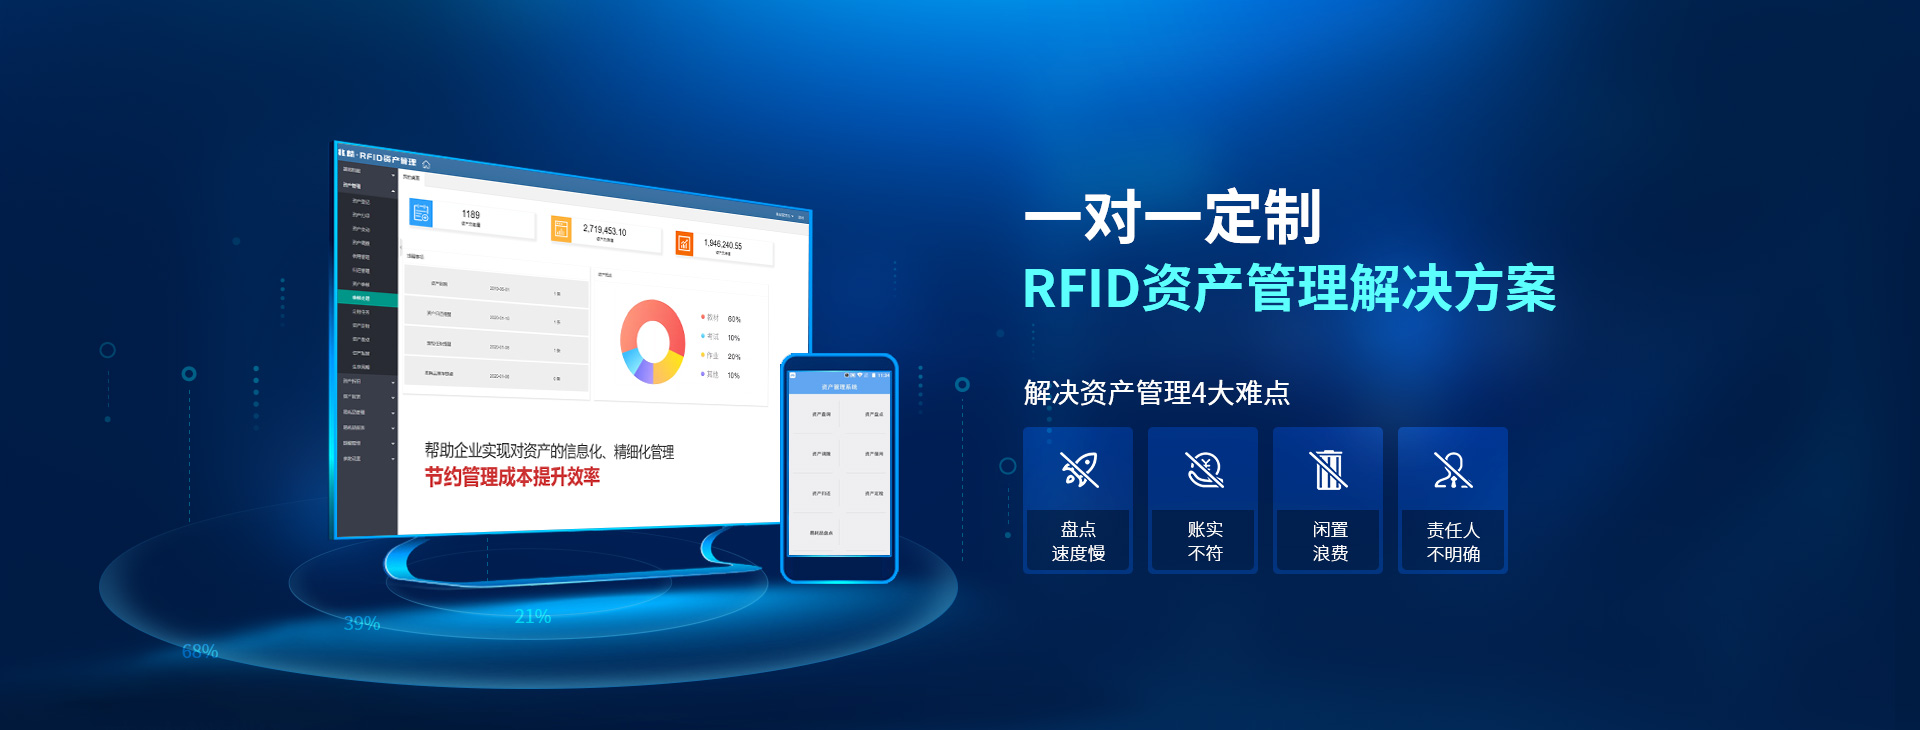 兆麟一對一定制RFID資產管理解決方案